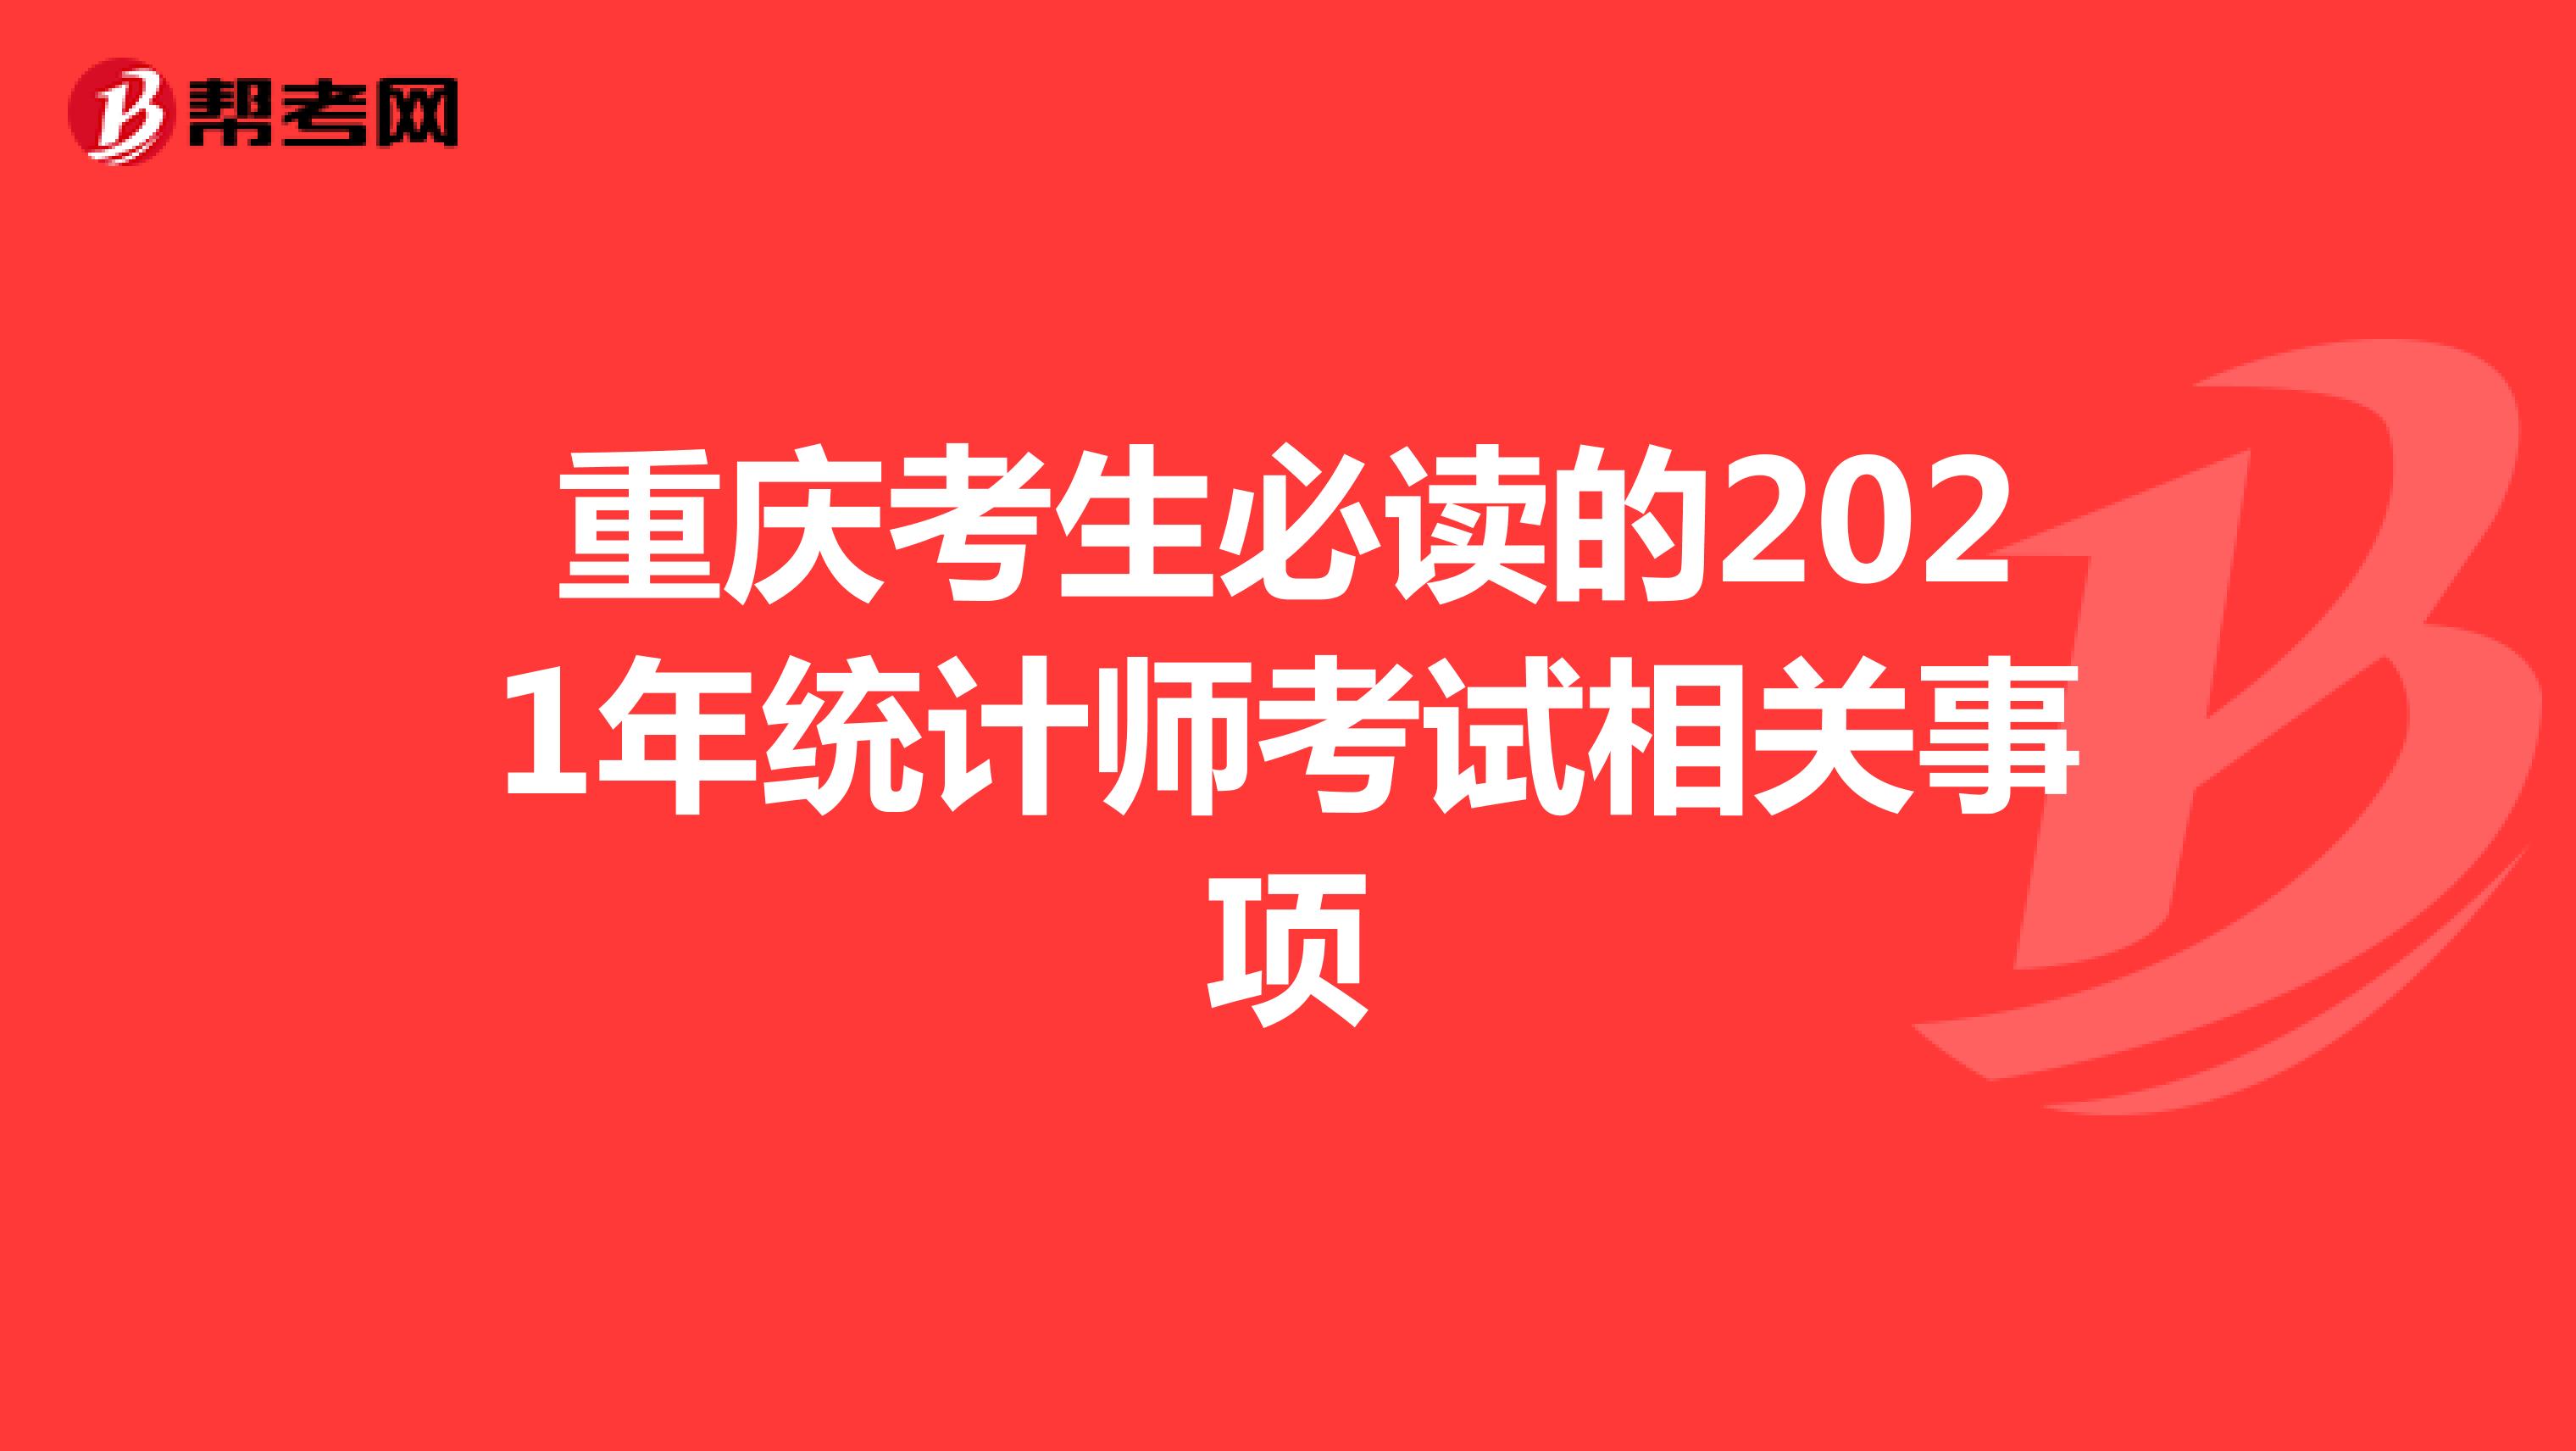 重庆考生必读的2021年统计师考试相关事项